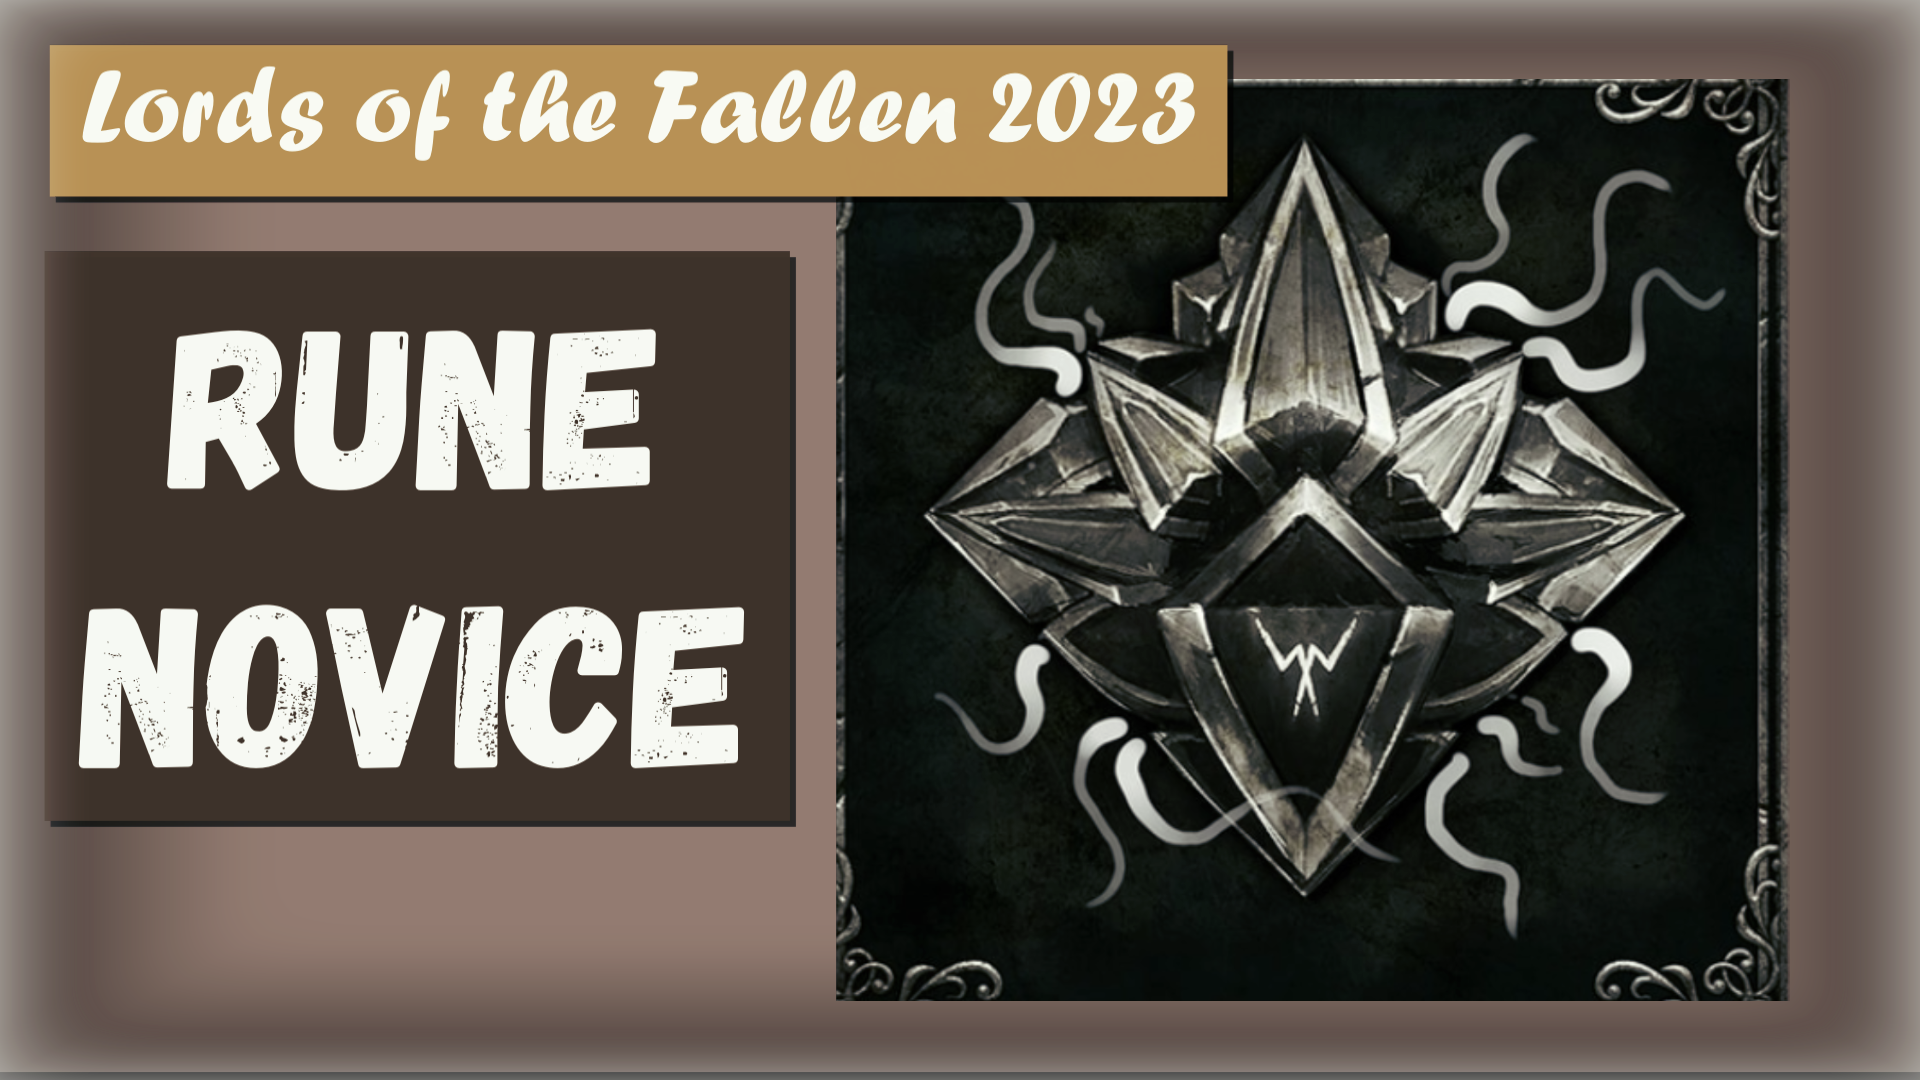 Lords of the Fallen 2023. Трофей "Rune Novice" Где находится инструкция для рунирования оружия.